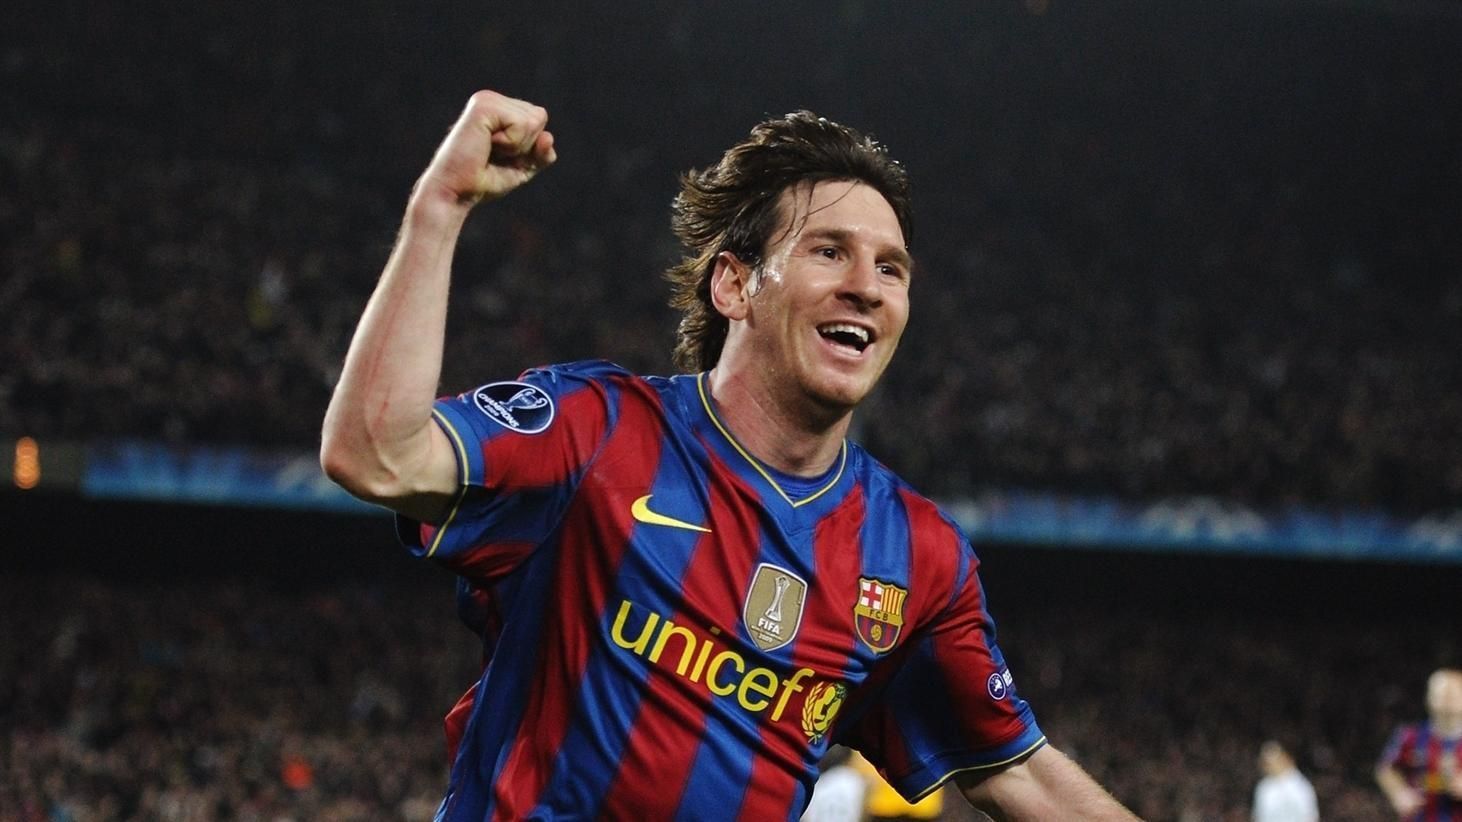 Lionel Messi scored 14 goals more than Cristiano Ronaldo in 2009-10